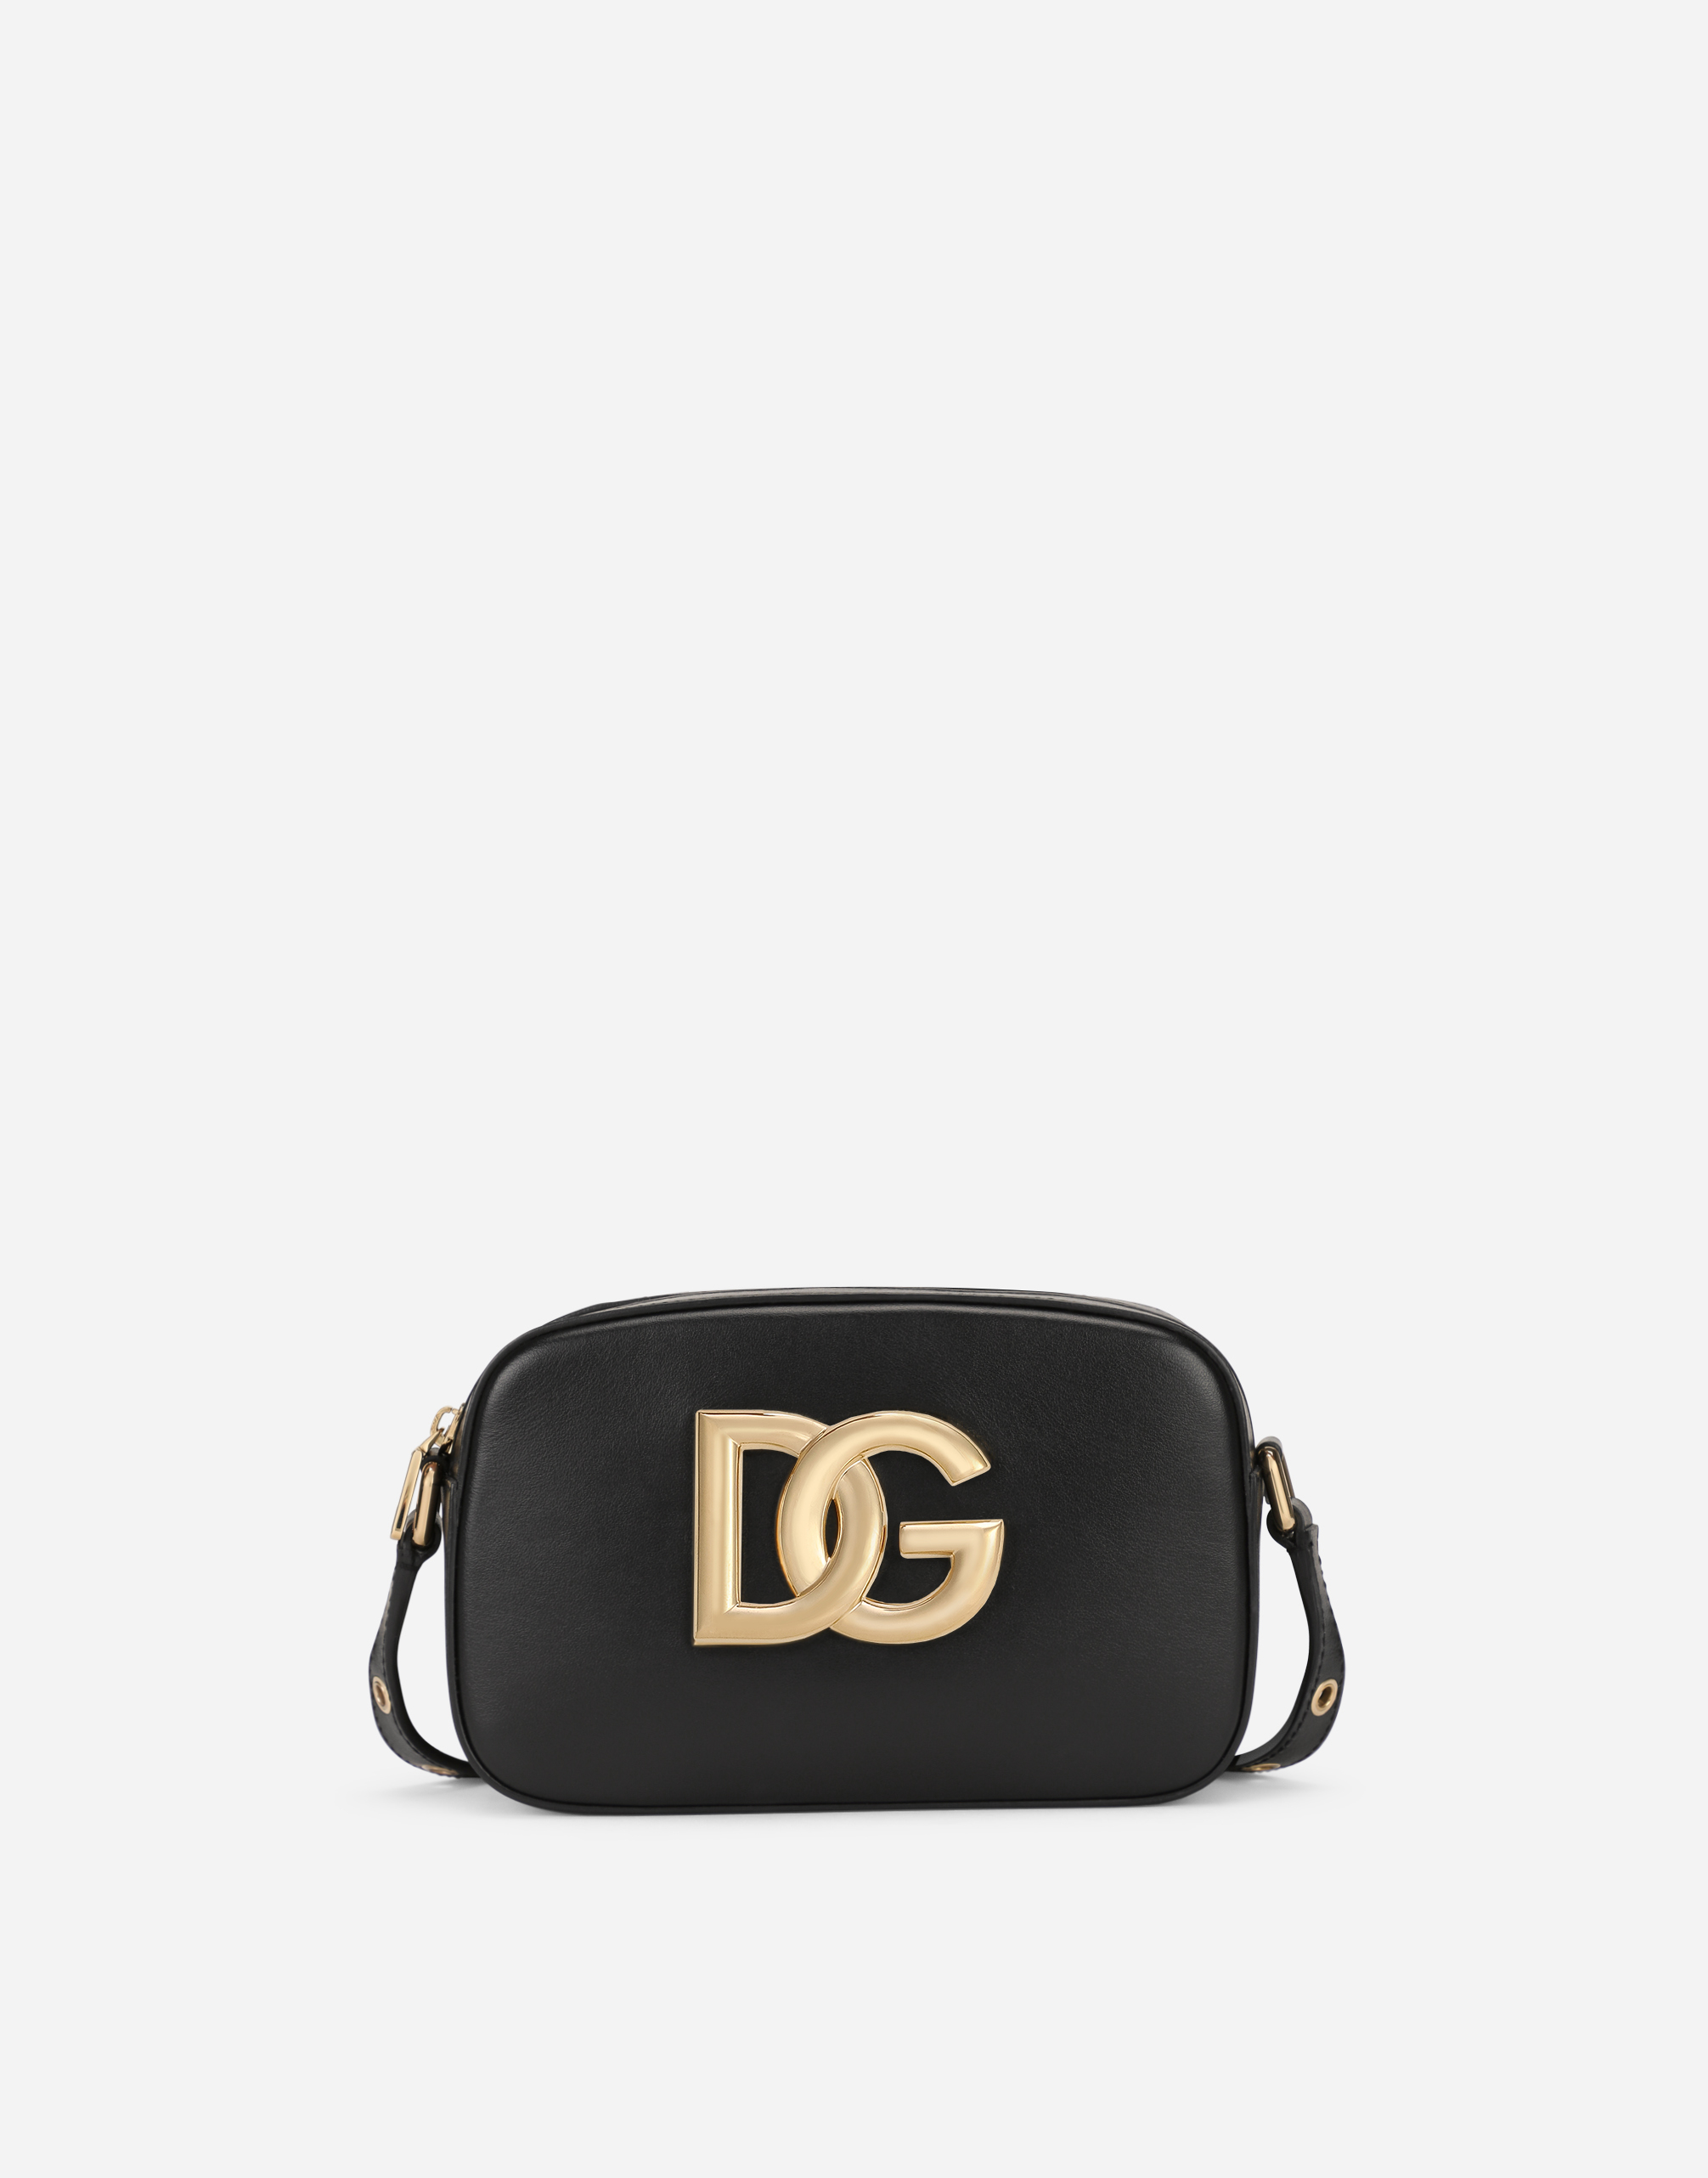 Dolce & Gabbana Calfskin Crossbody 3.5 Bag In Black